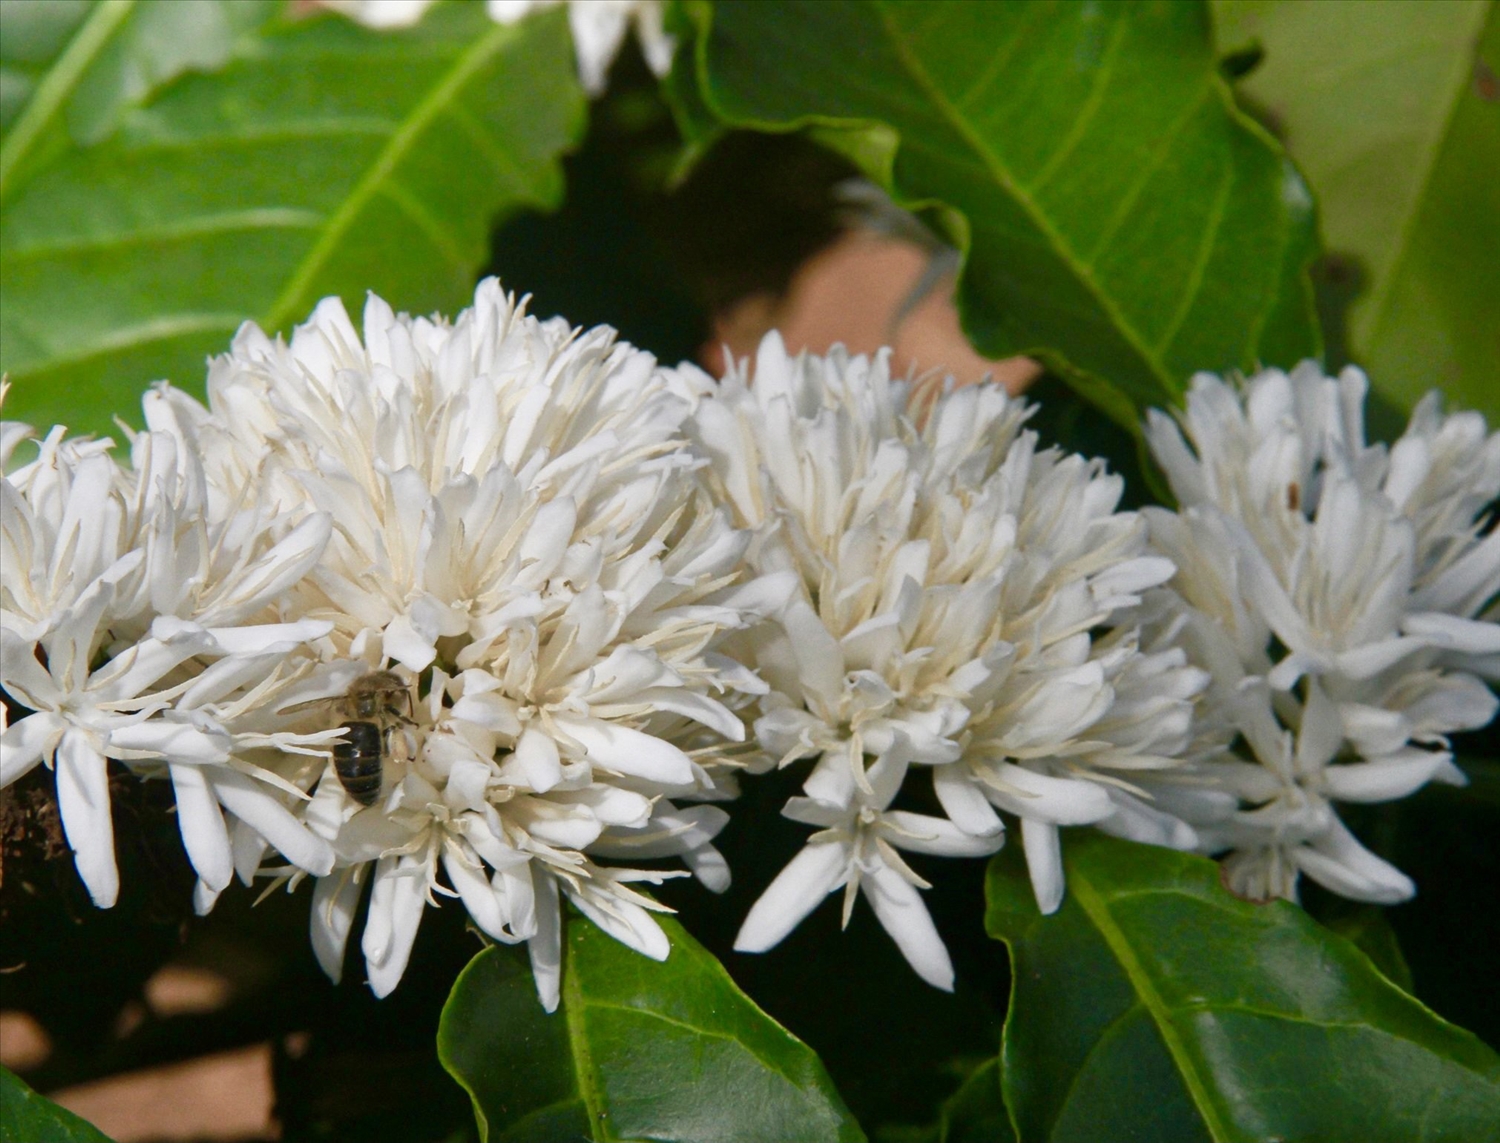 Những con ong chăm chỉ hút mật trên những bông hoa cà phê trắng muốt